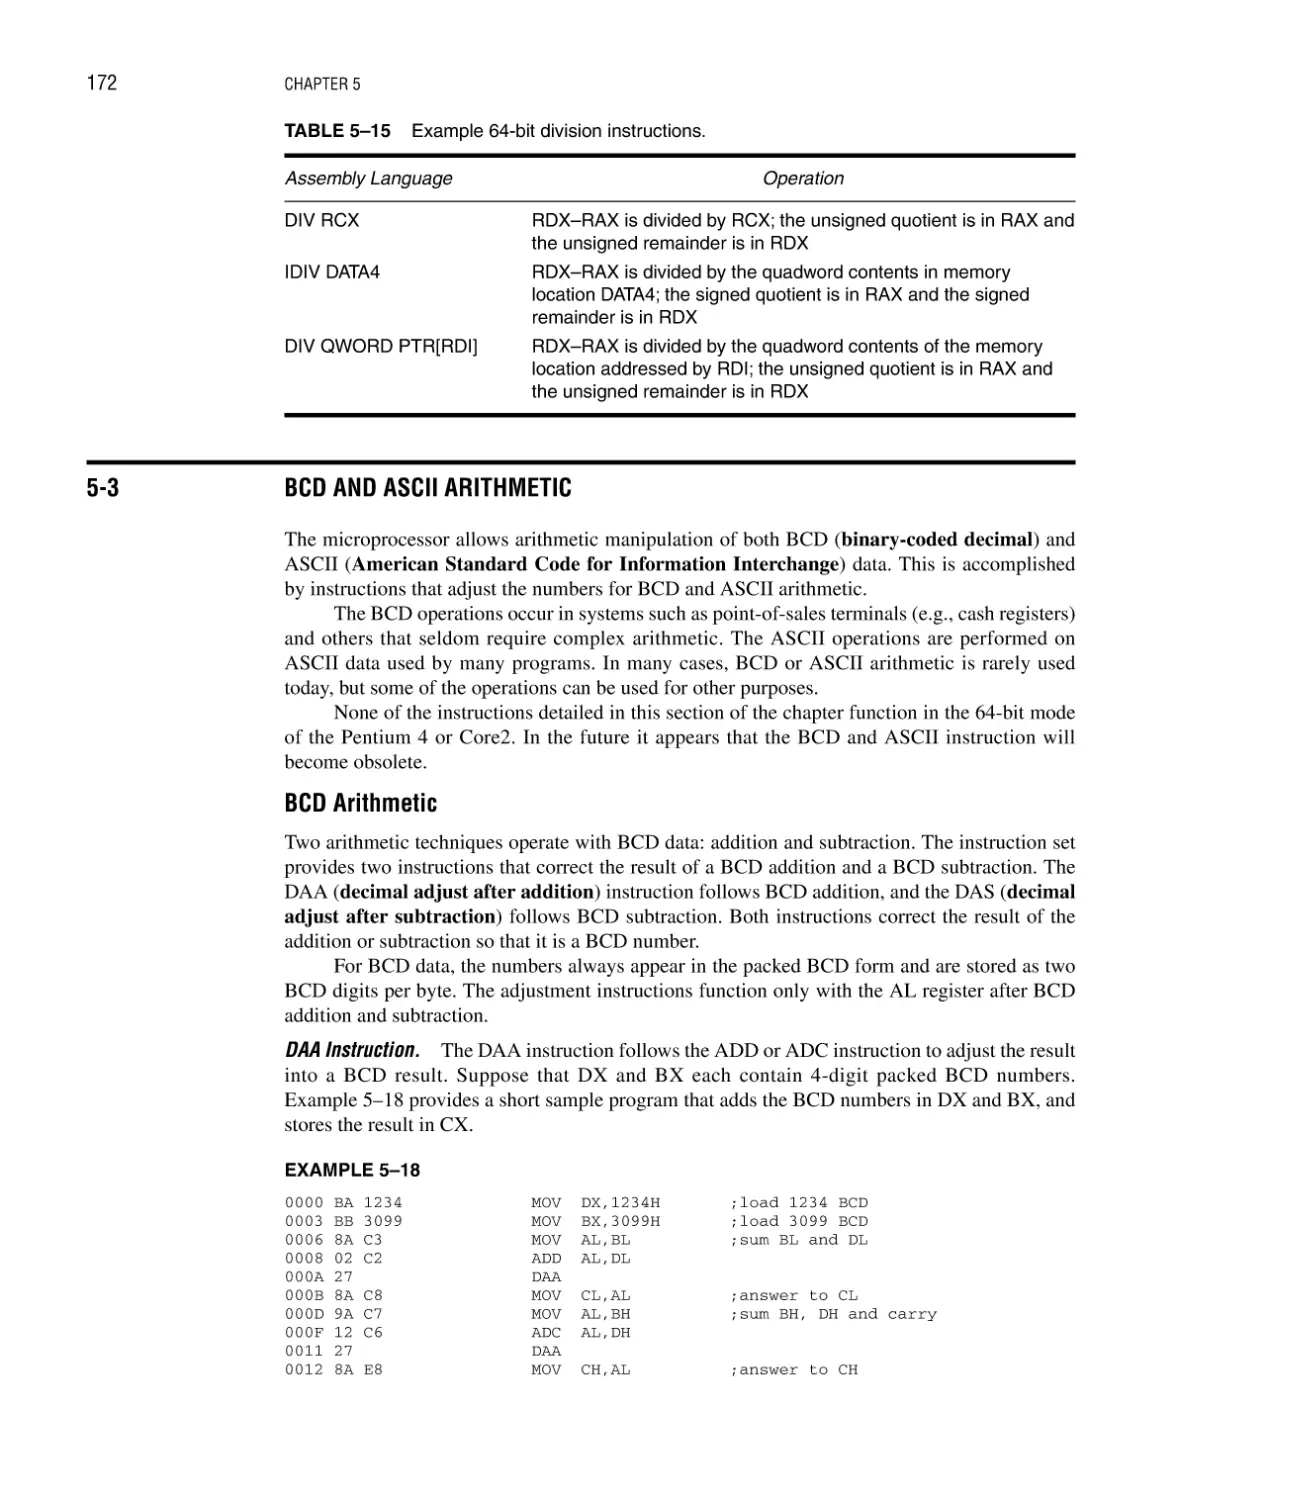 5–3 BCD and ASCII Arithmetic
BCD Arithmetic